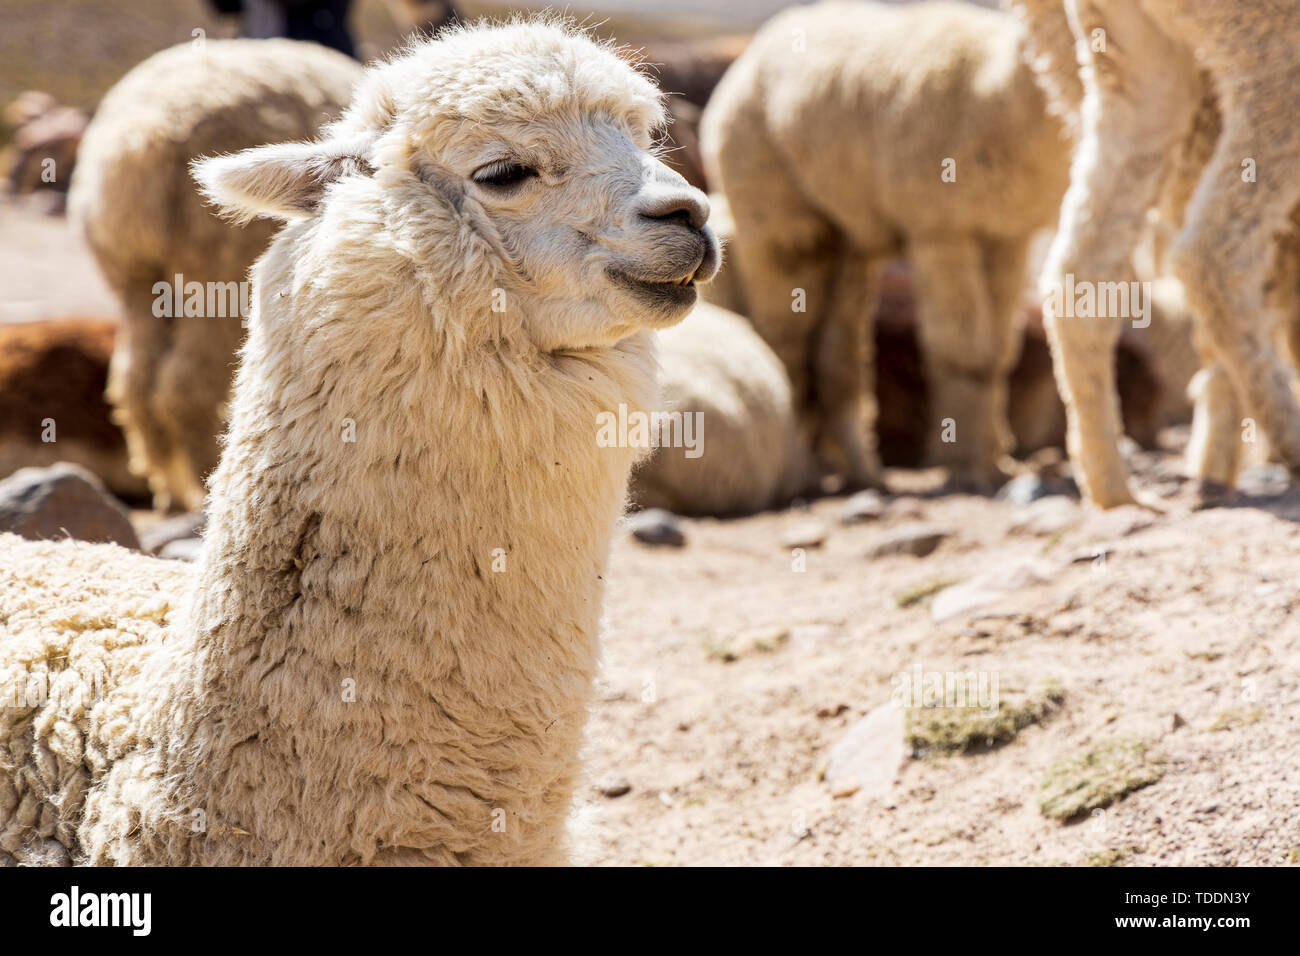 Alpacas, Vicugna pacos, Reserva Nacional de Salinas y Aguada Blanca, Arequipa, Peru, Stock Photo